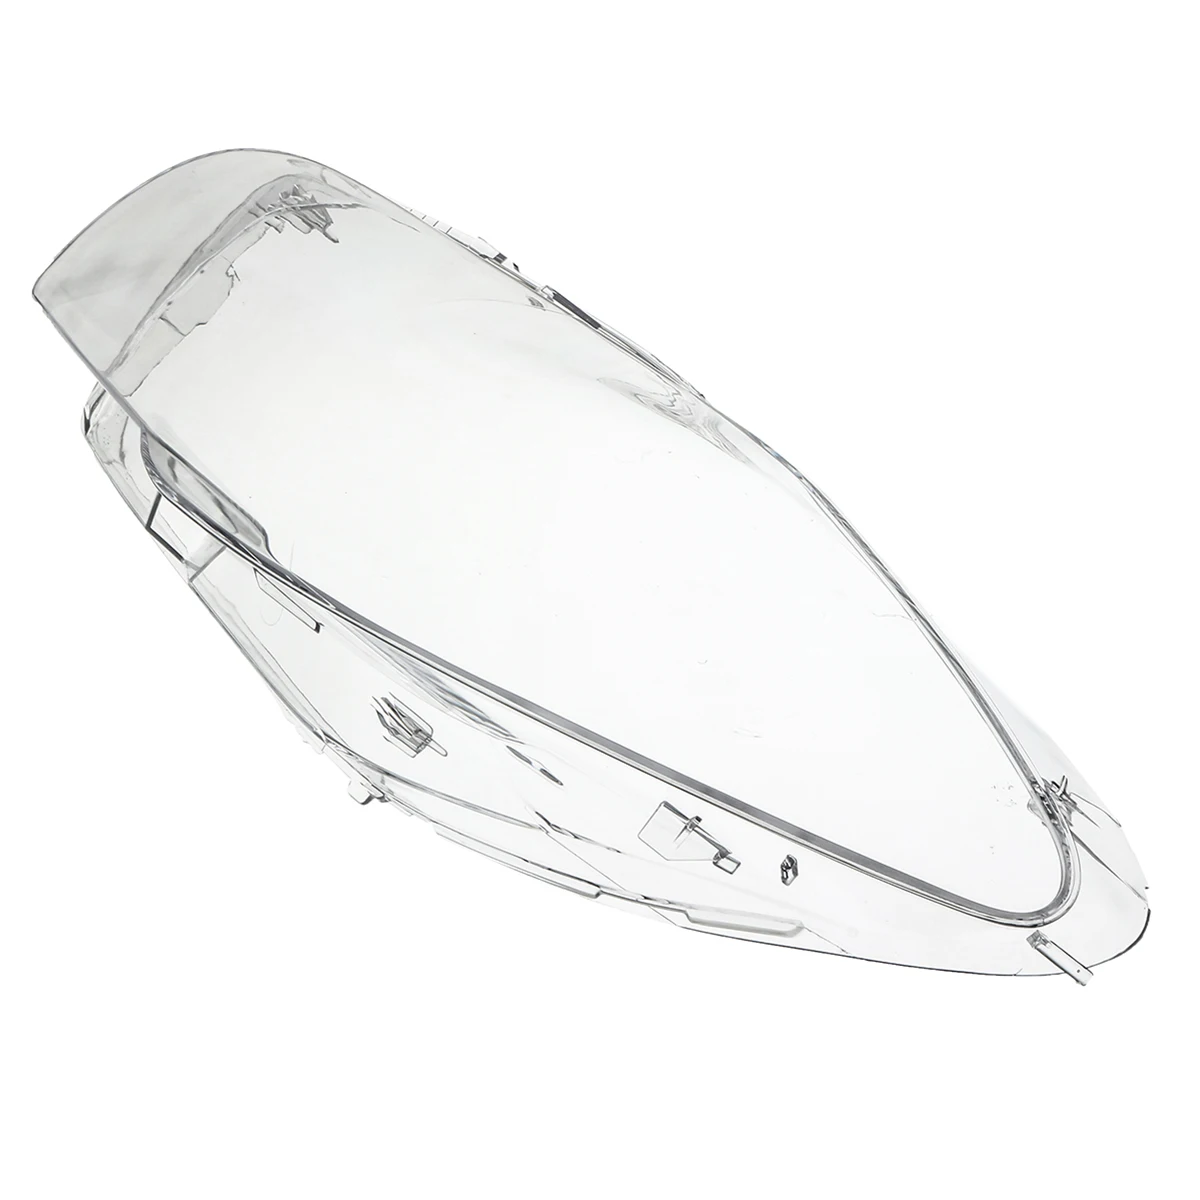 Автомобильный головной светильник, прозрачный светильник, крышка объектива правая/левая сторона для BMW 5 серии F10 F18 520 523 525 535 530 2010